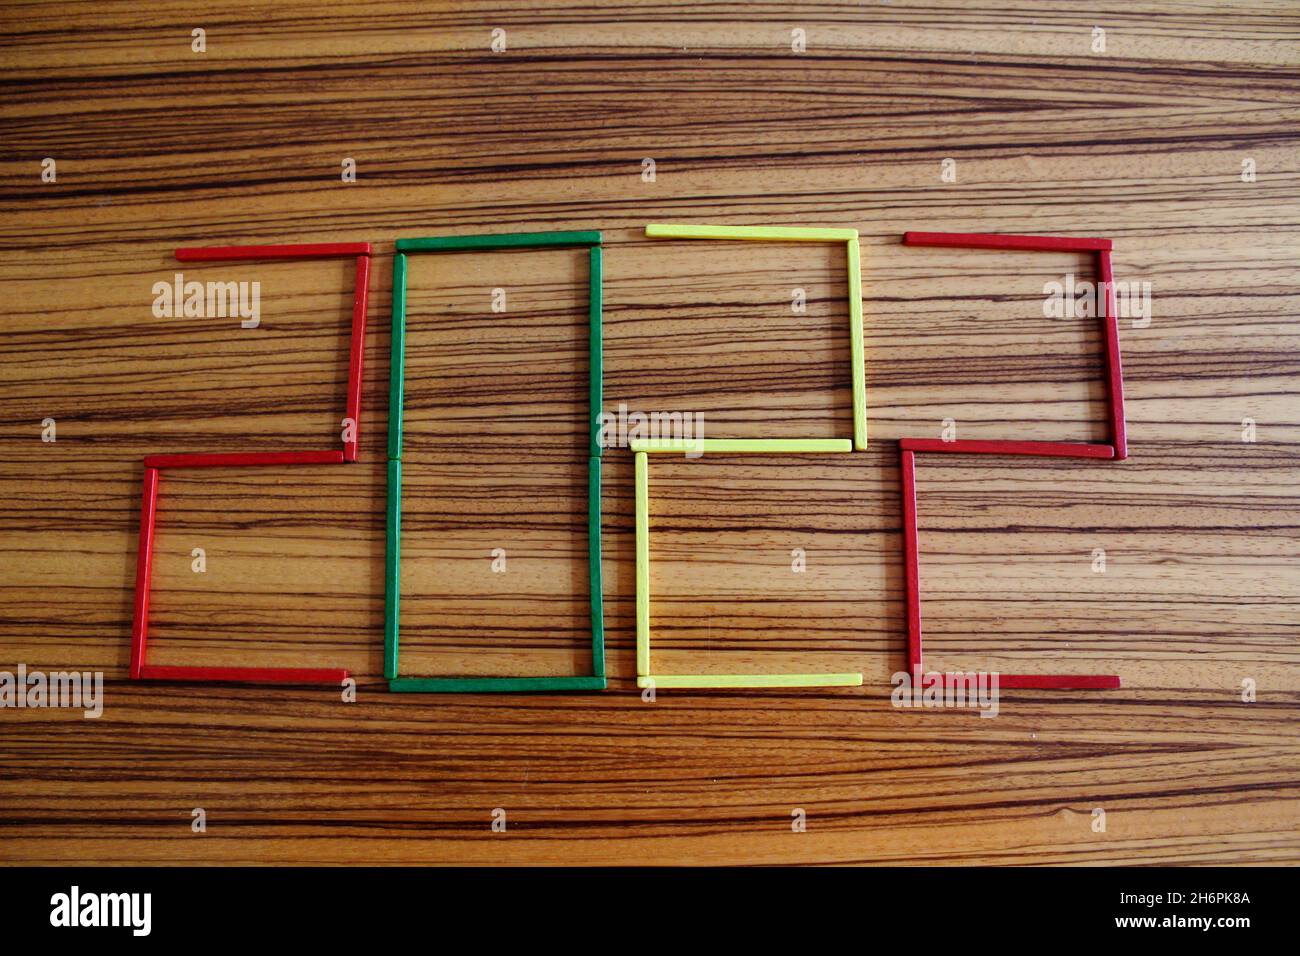 Bunte Holzstäbchen in rot, grün und gelb, auf einem Holztisch liegend, die die Zahl 2022 darstellen. Stock Photo